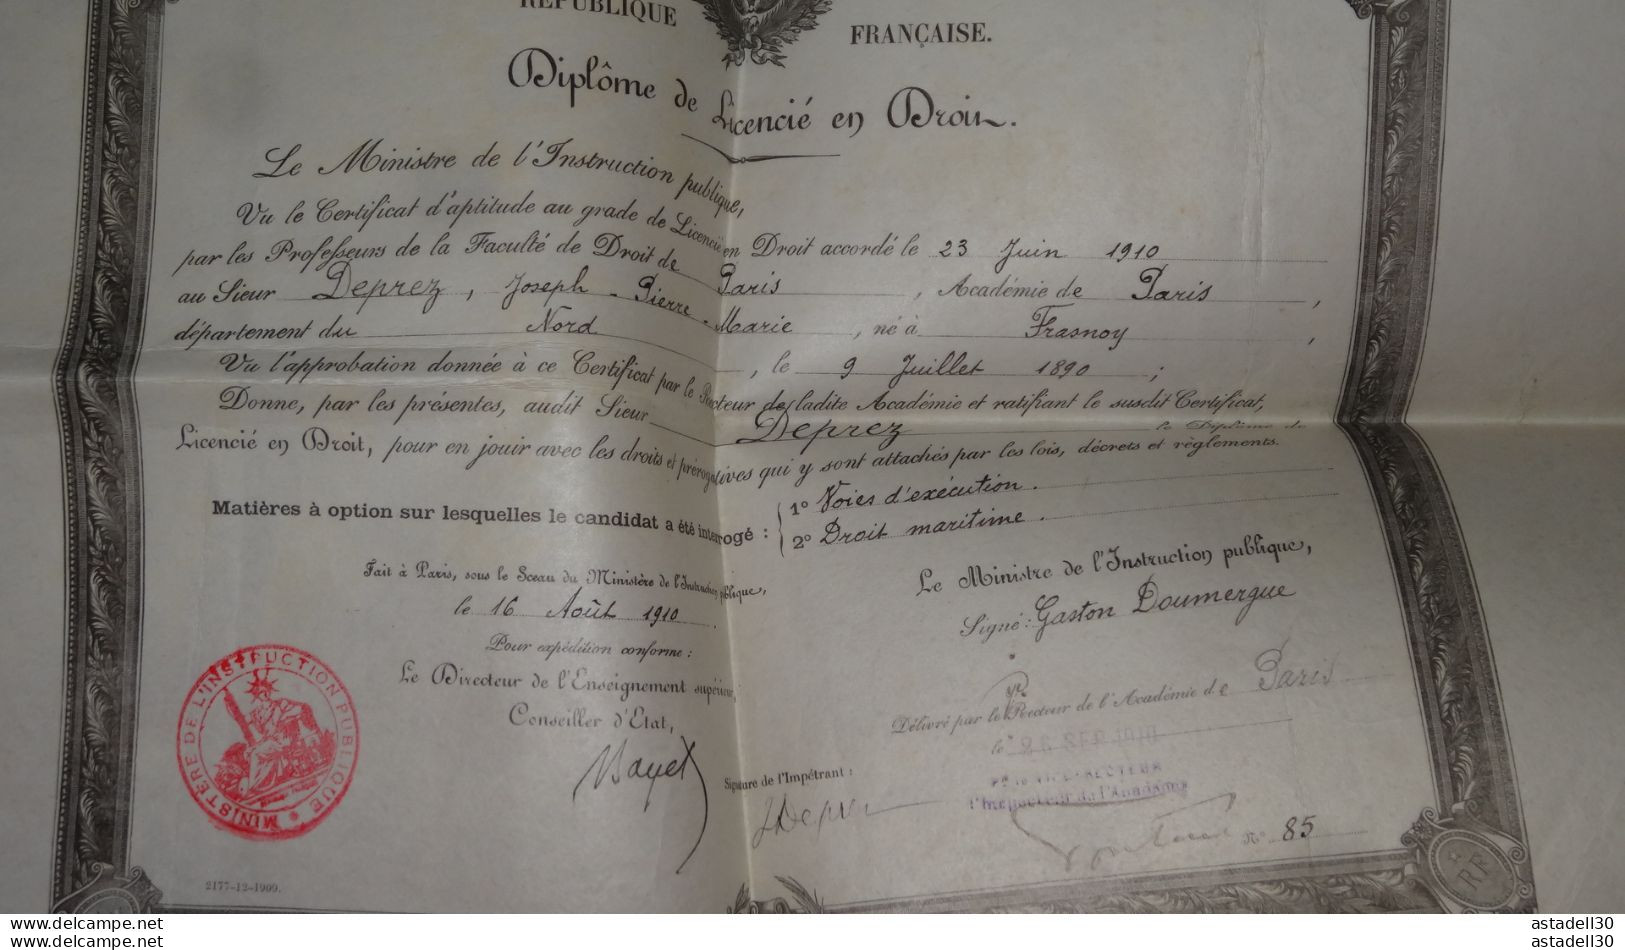 Diplome De Lecencié En Droit De 1910 , DEPREZ Né A Fresnoy............. PHI-Caisse41 ........ DIP-002 - Diplome Und Schulzeugnisse